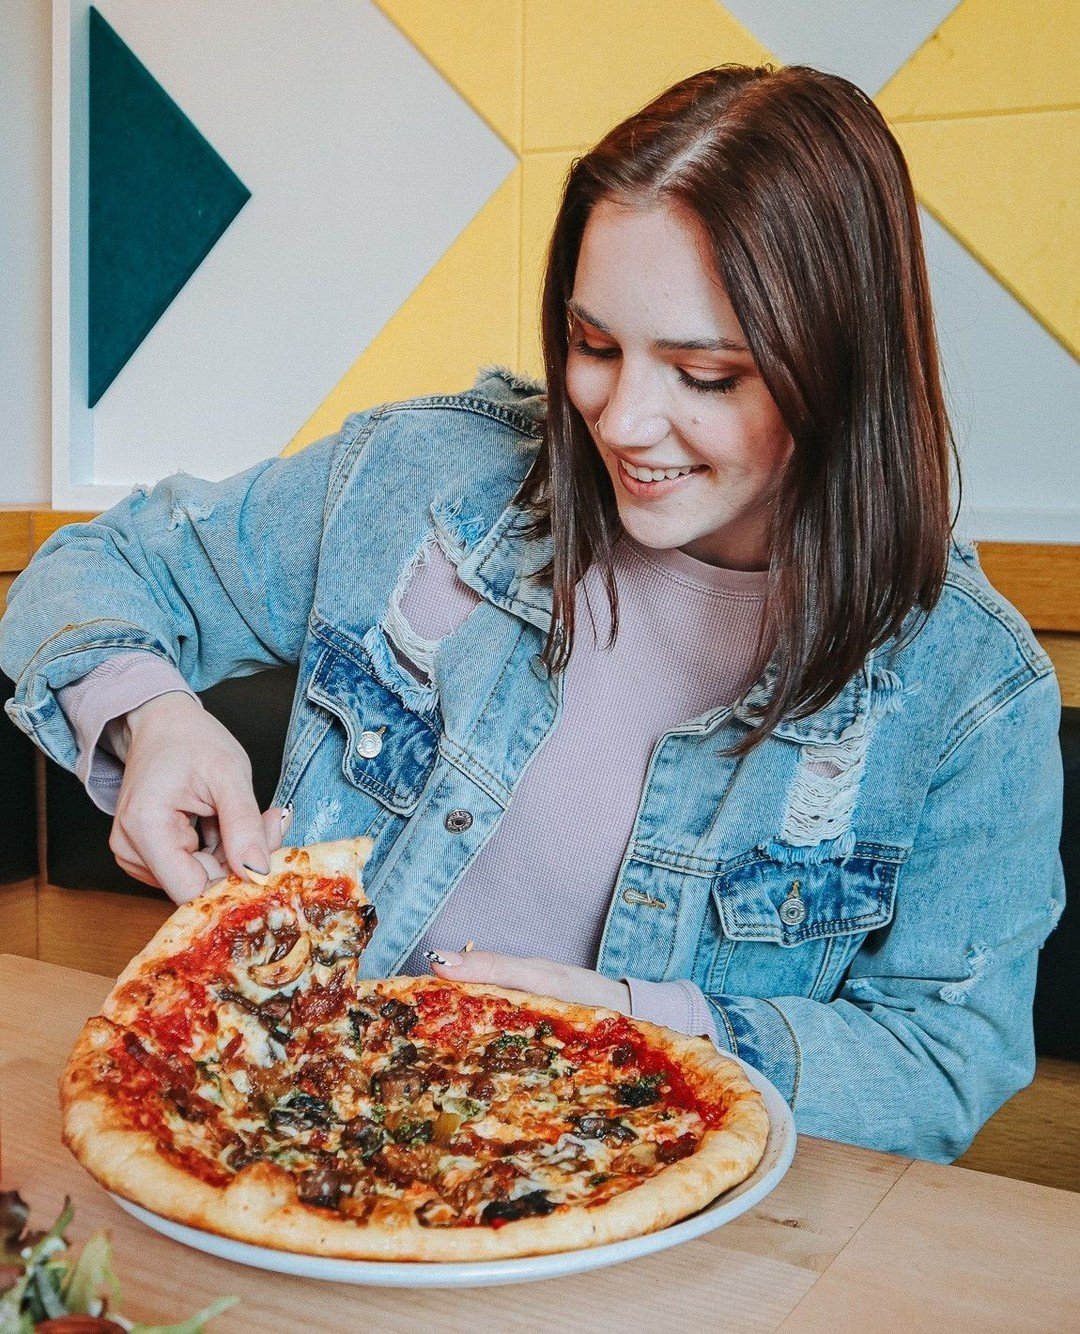 Yes to Pizza...it's always a yes! 😋⁠
⁠
⁠
⁠
⁠
#basilandboard #salemoregon #salemeats #travelsalem #downtownsalem #insalemoregon #salemor #salemfood #pressplaysalem #makesalmawesome #salemisawesome #goodeats #pizza #wine #pizzaandwine #pizzalover #piz